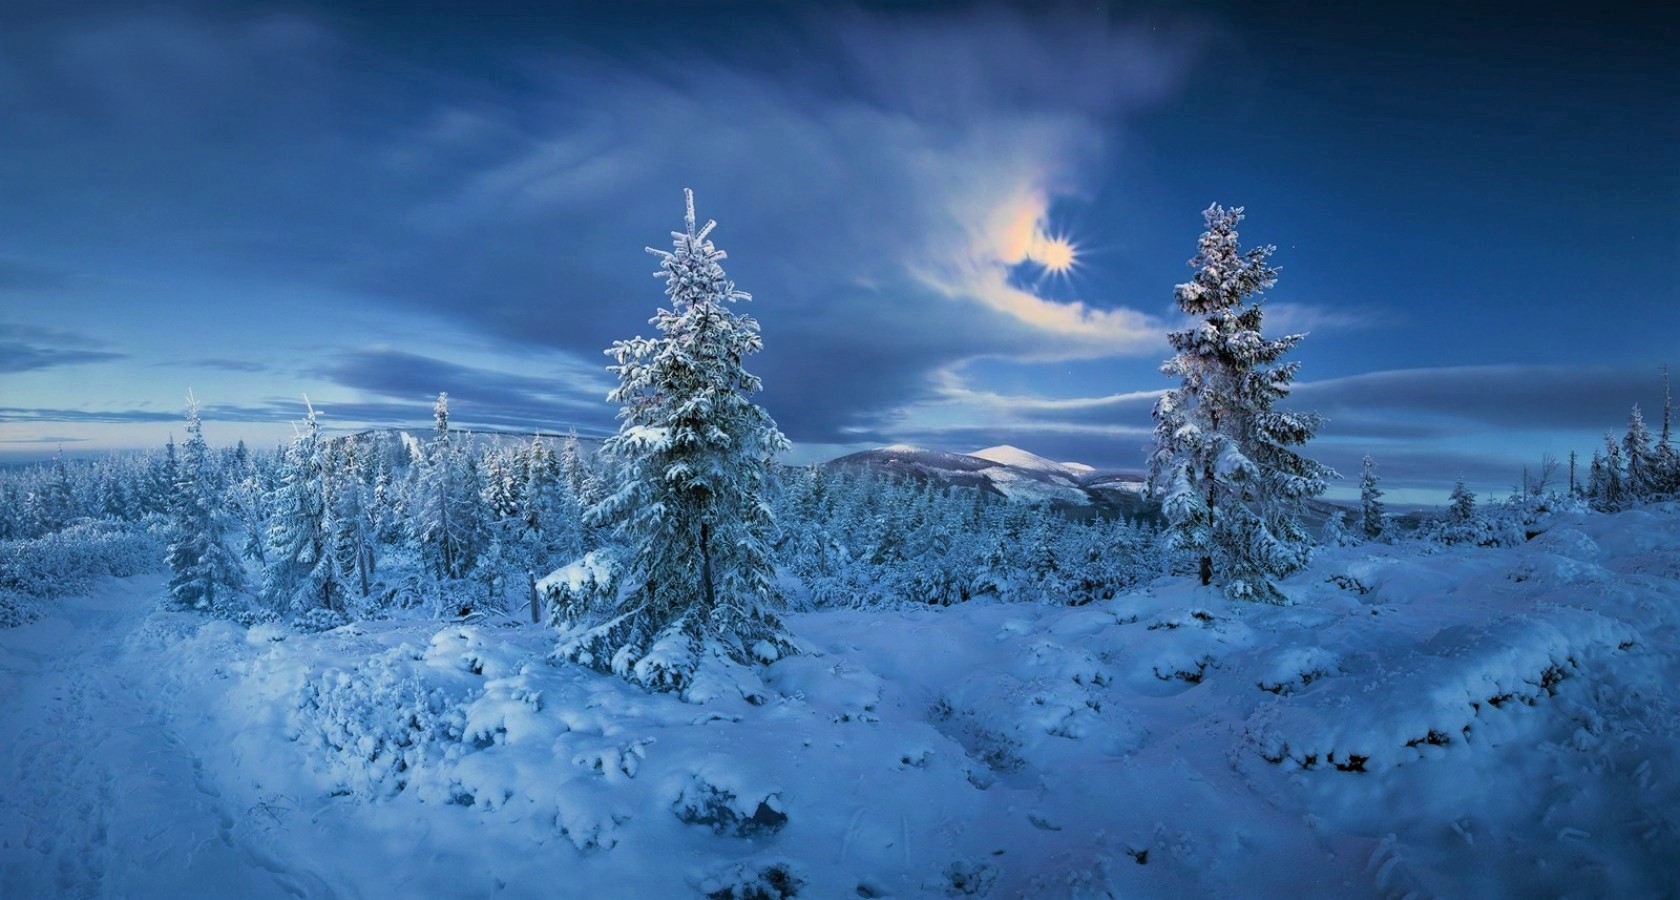 Скачать обои бесплатно Пейзаж, Зима, Снег, Дерево, Земля, Земля/природа картинка на рабочий стол ПК